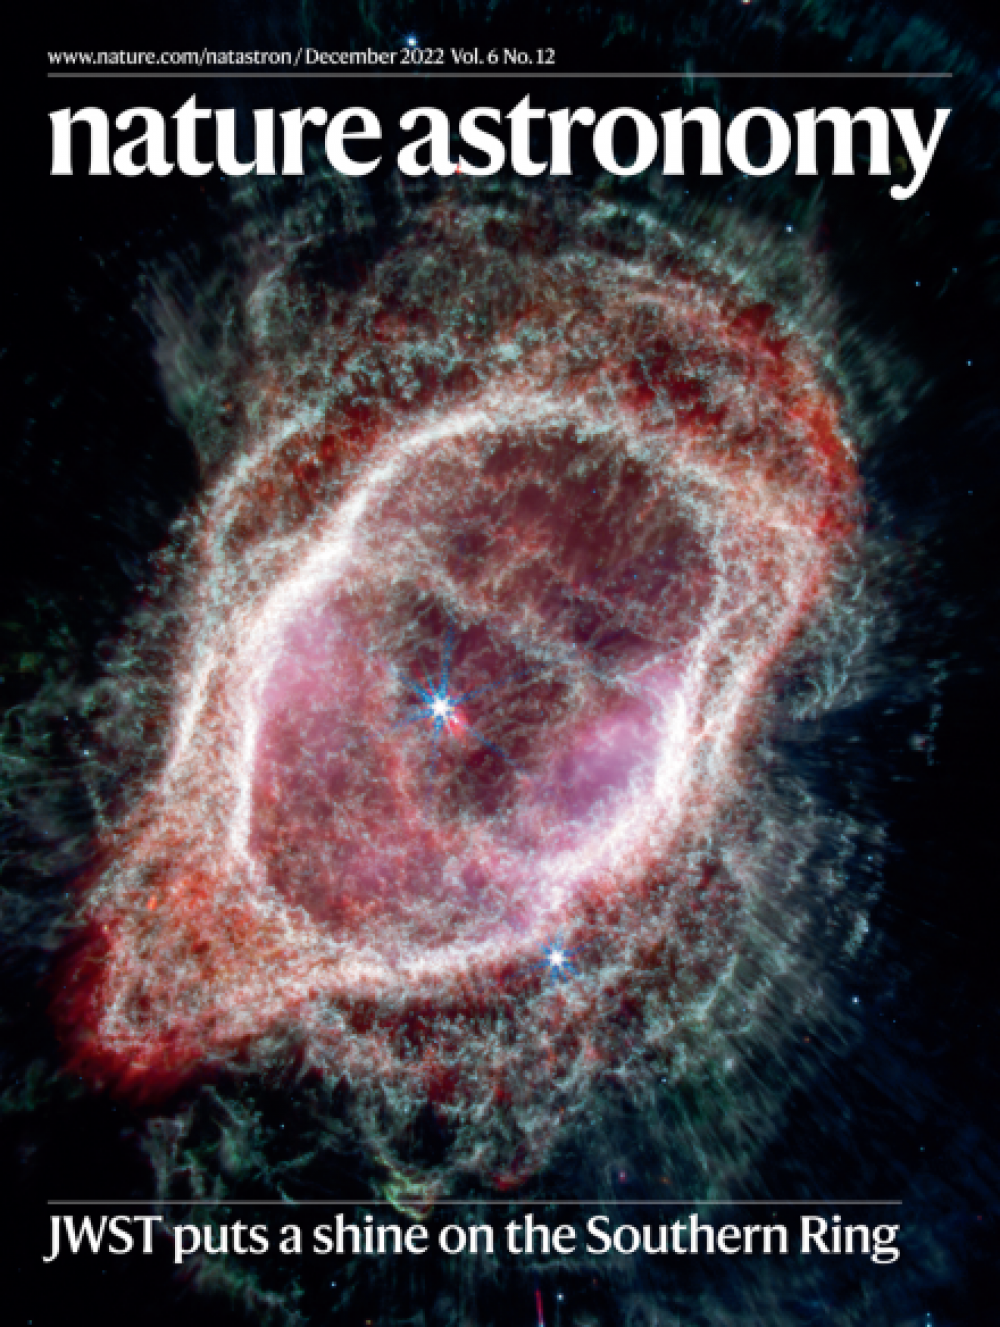 柏坤霆教授和國際天體物理學家的研究作為封面研究發表在《自然天文學》上